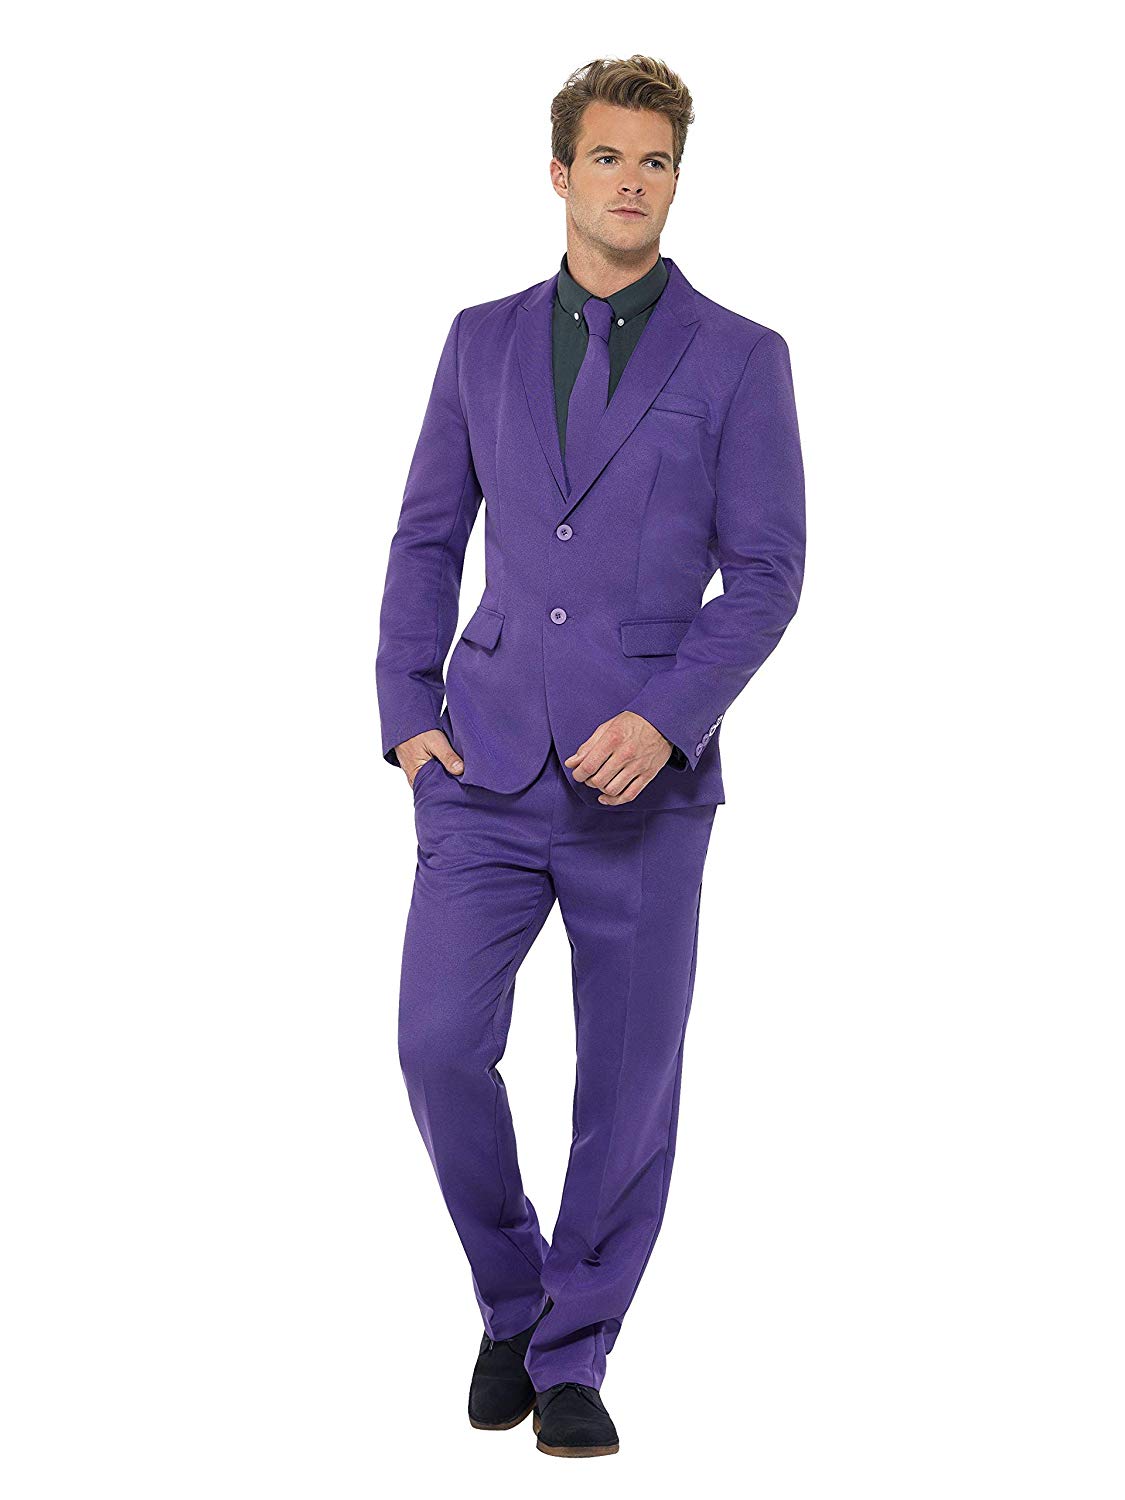 Фиолетовый мужской цвет. Фиолетовый костюм. Фиолетовый костюм мужской. Сиреневый костюм мужской. Лиловый костюм мужской.